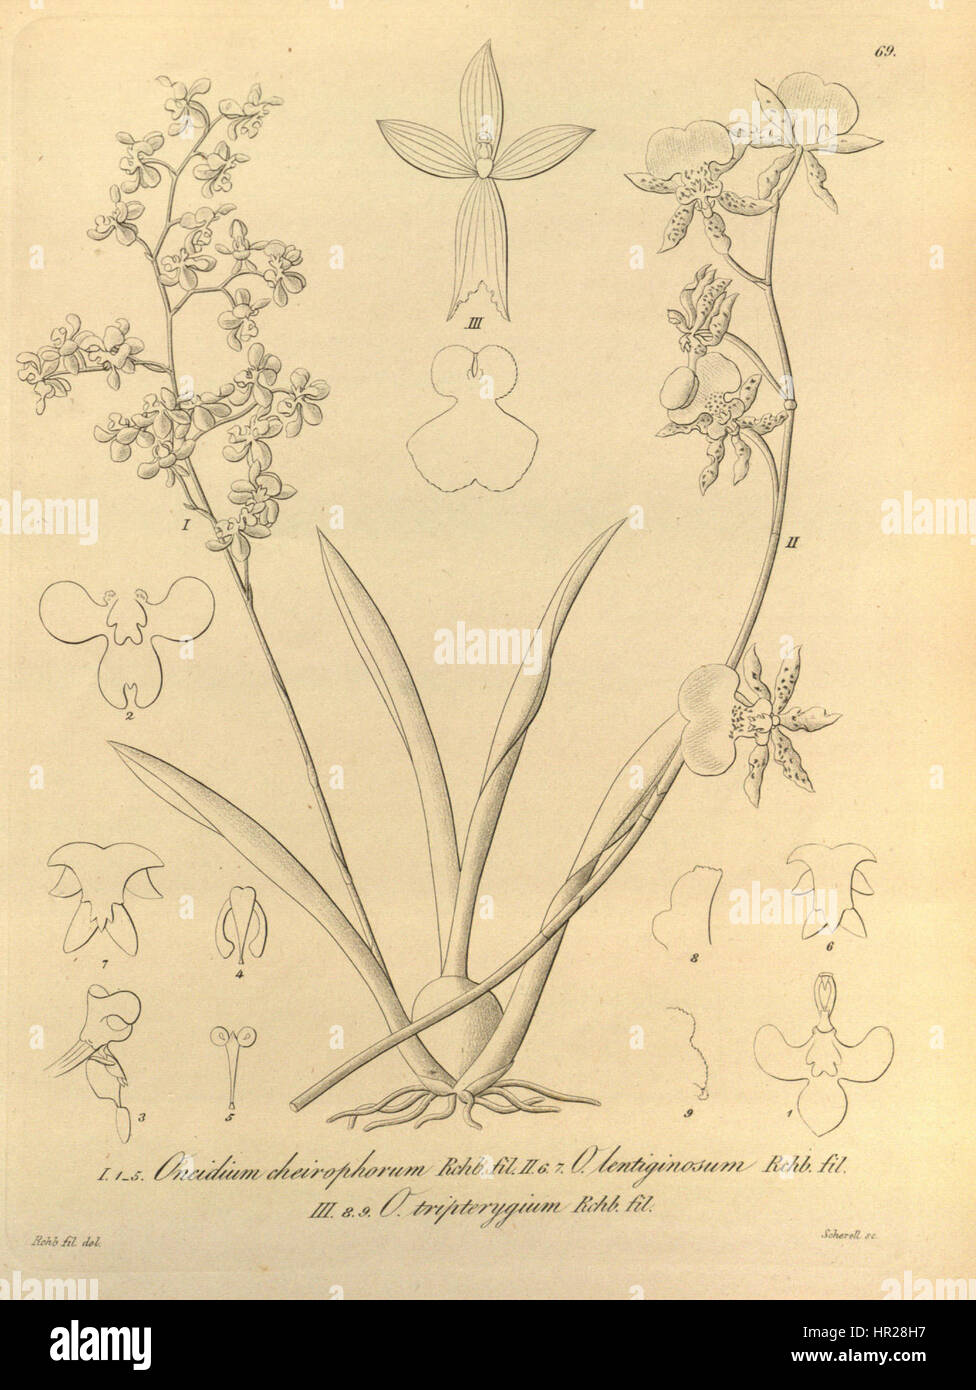 Oncidium cheirophorum - Oncidium lentiginosum - Caucaea tripterygia (as Onc. tripterygium) - Xenia 1 pl. 69 (1858) Stock Photo